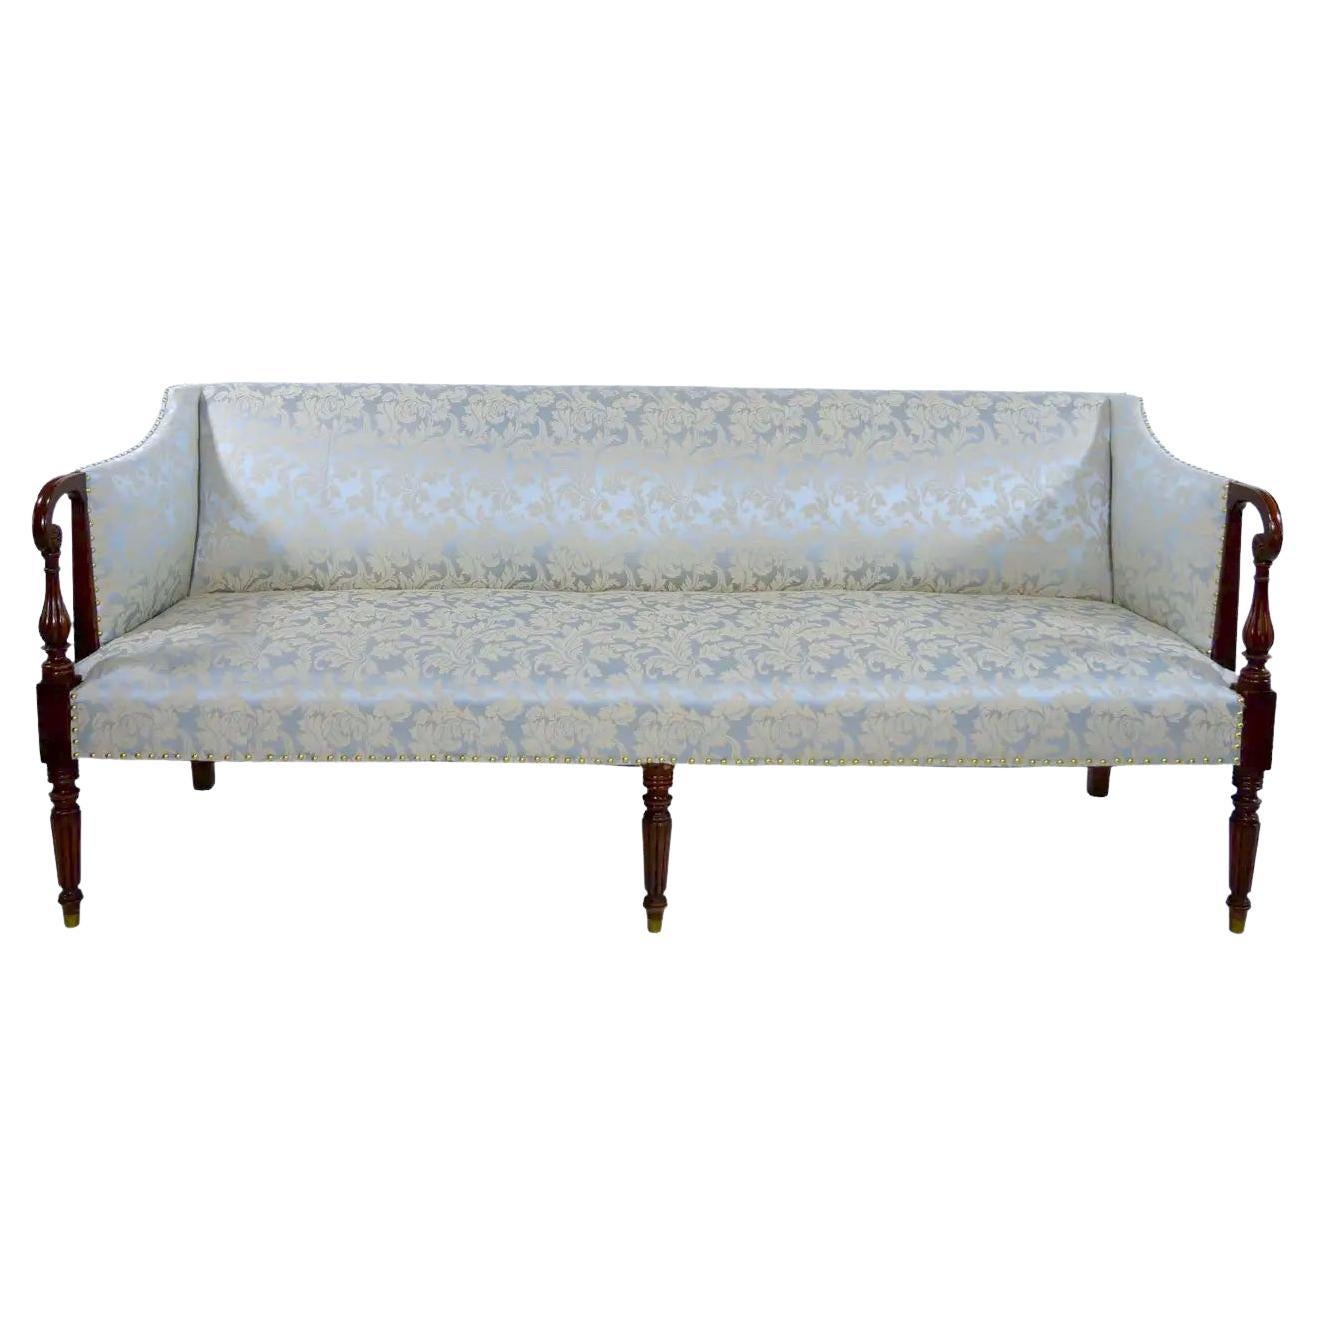 19th Century Mahogany Wood Federal Sheraton Style Sofa